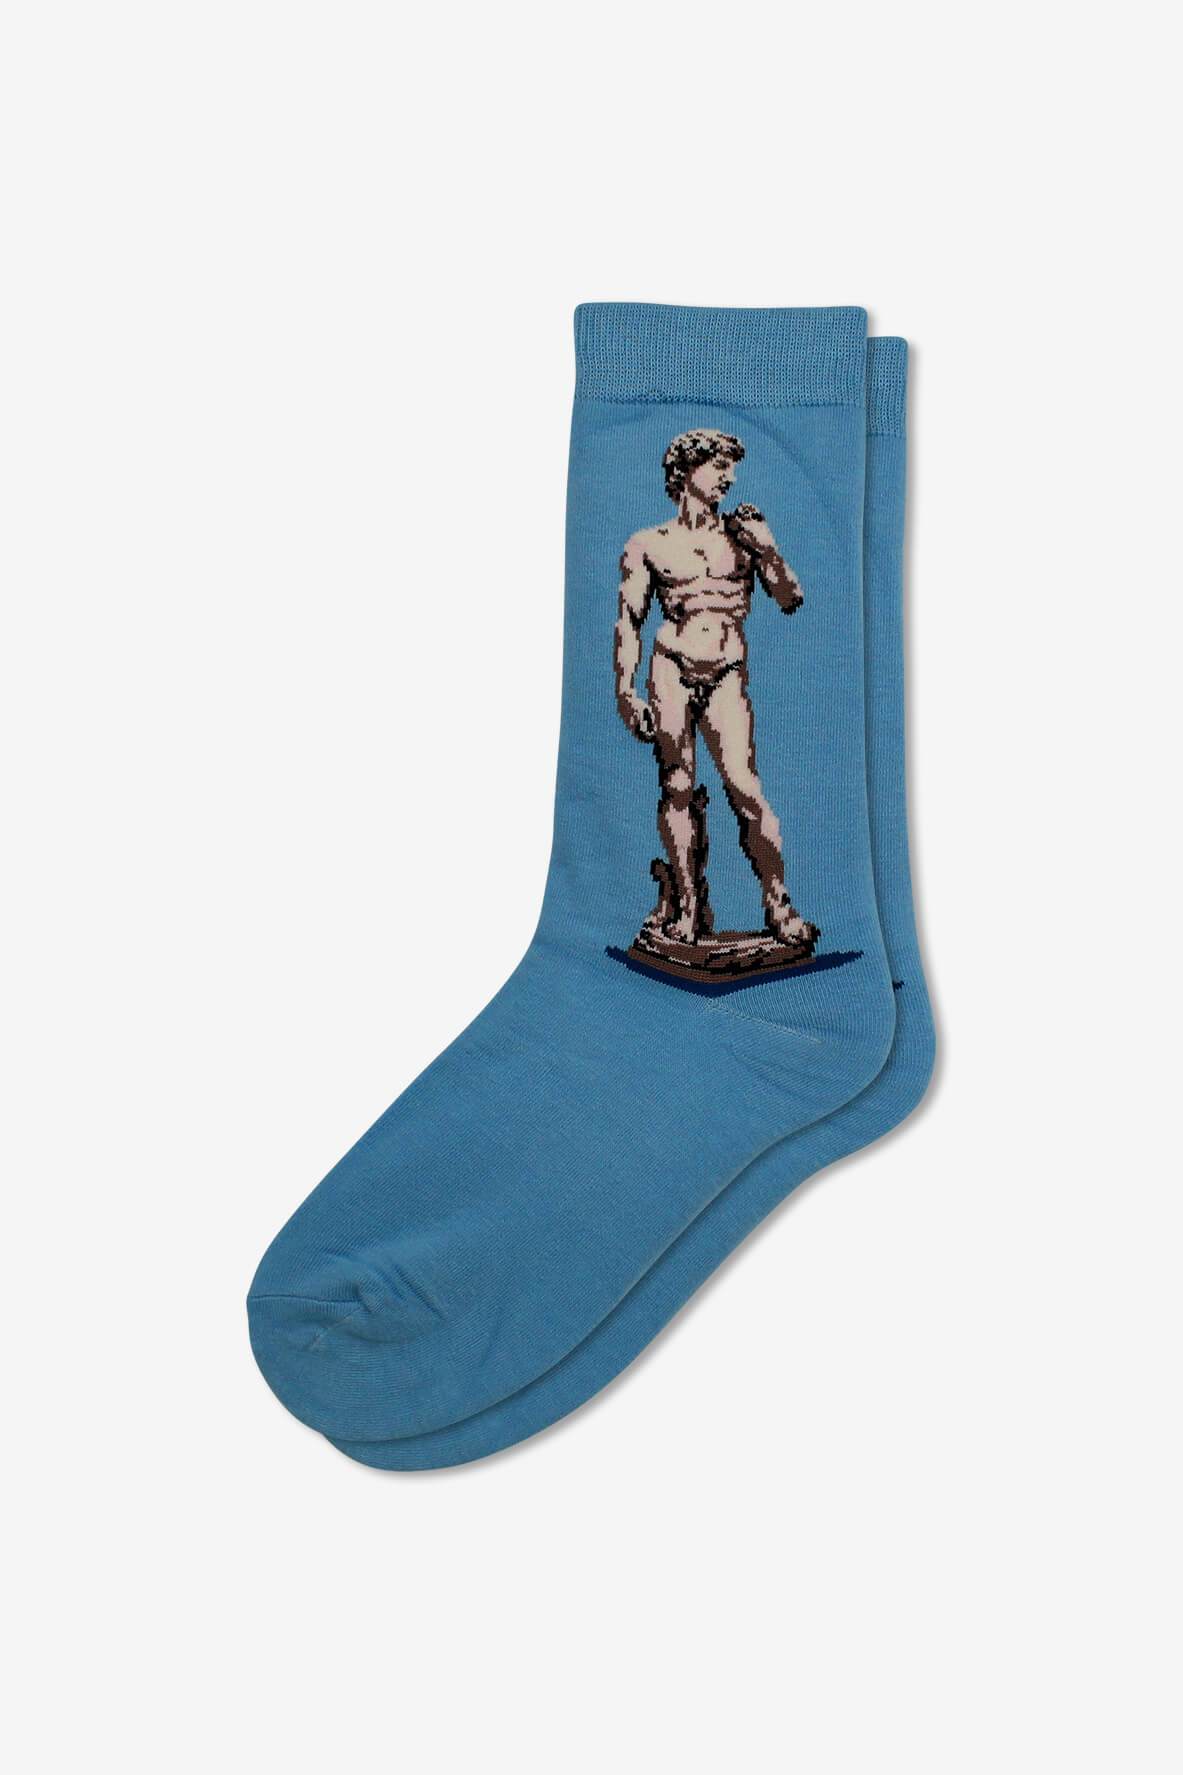 Socks IMG_5314, socks, GoTie